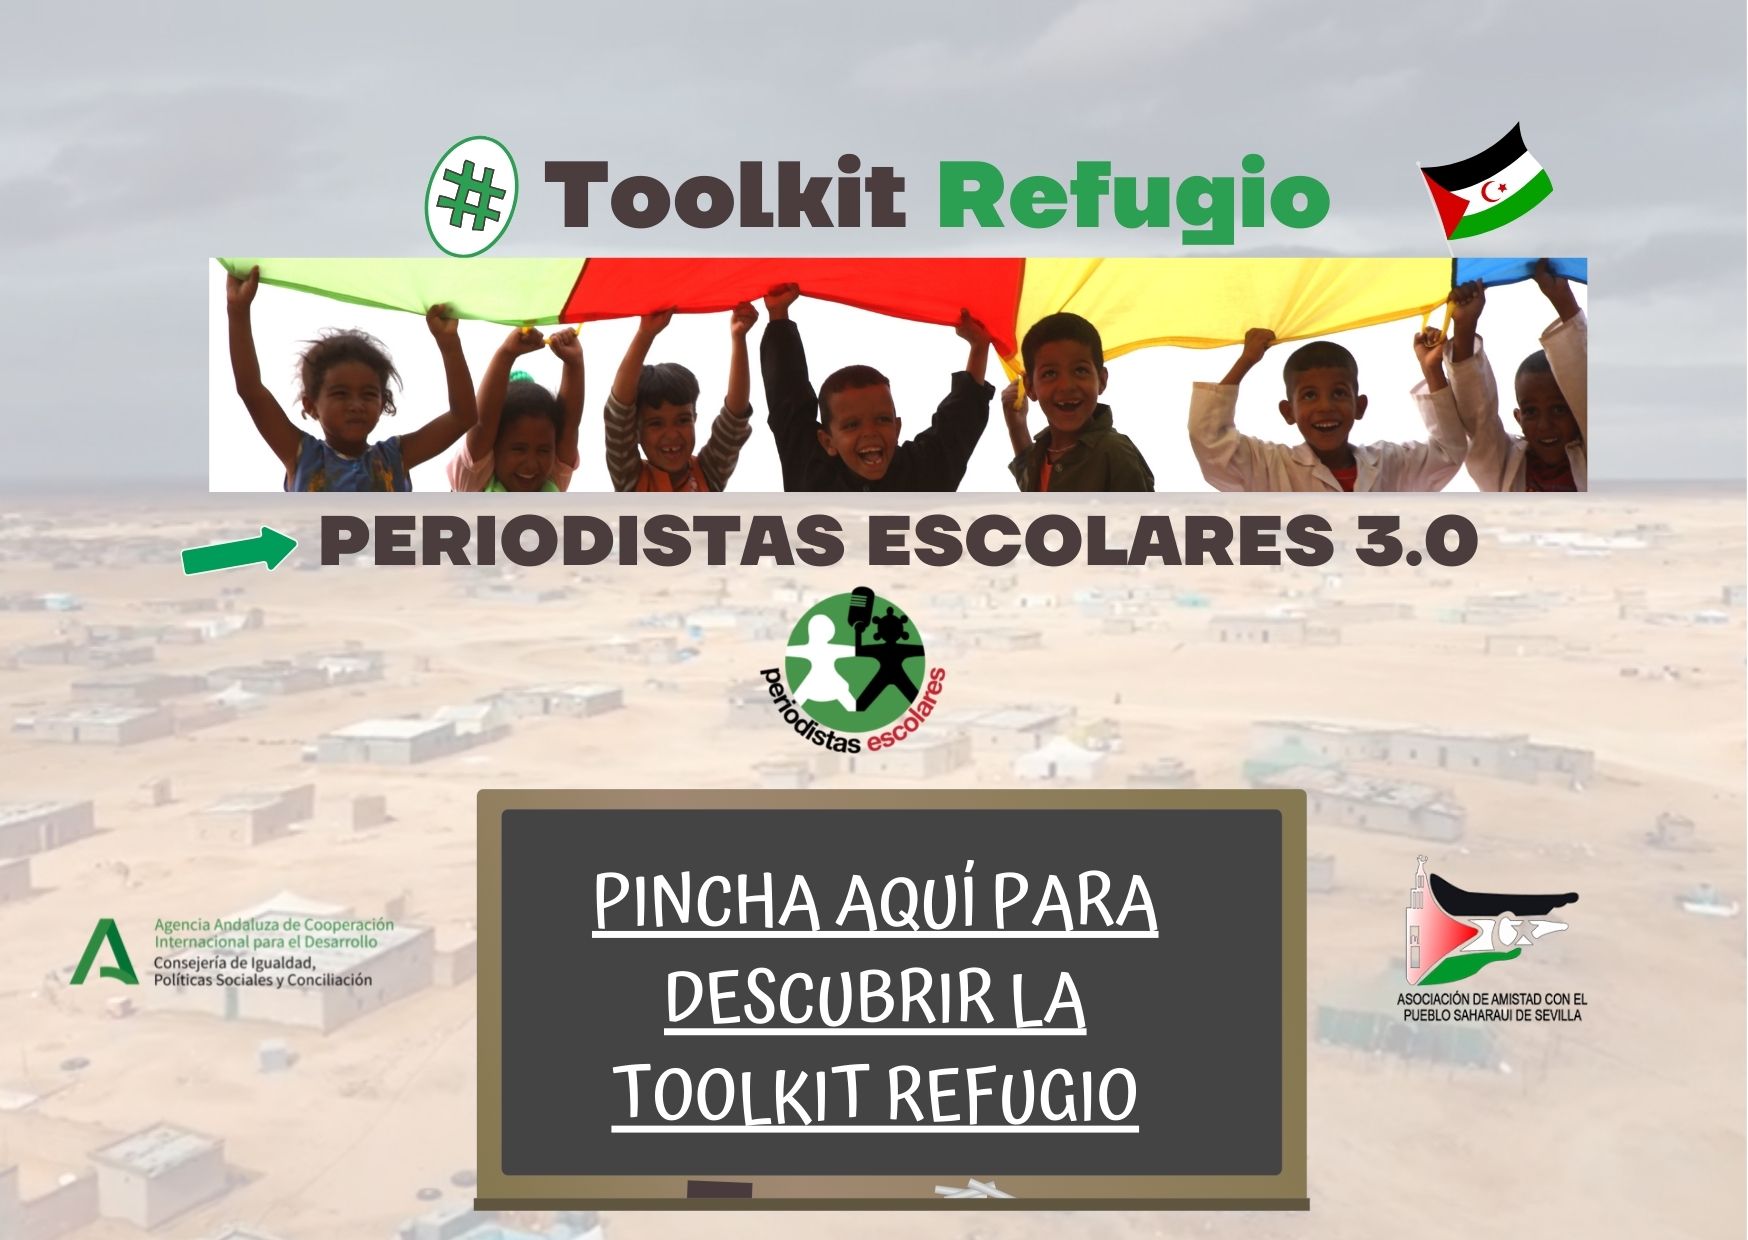 Ya está aquí la unidad didáctica de los Periodistas Escolares: «Toolkit Refugio»